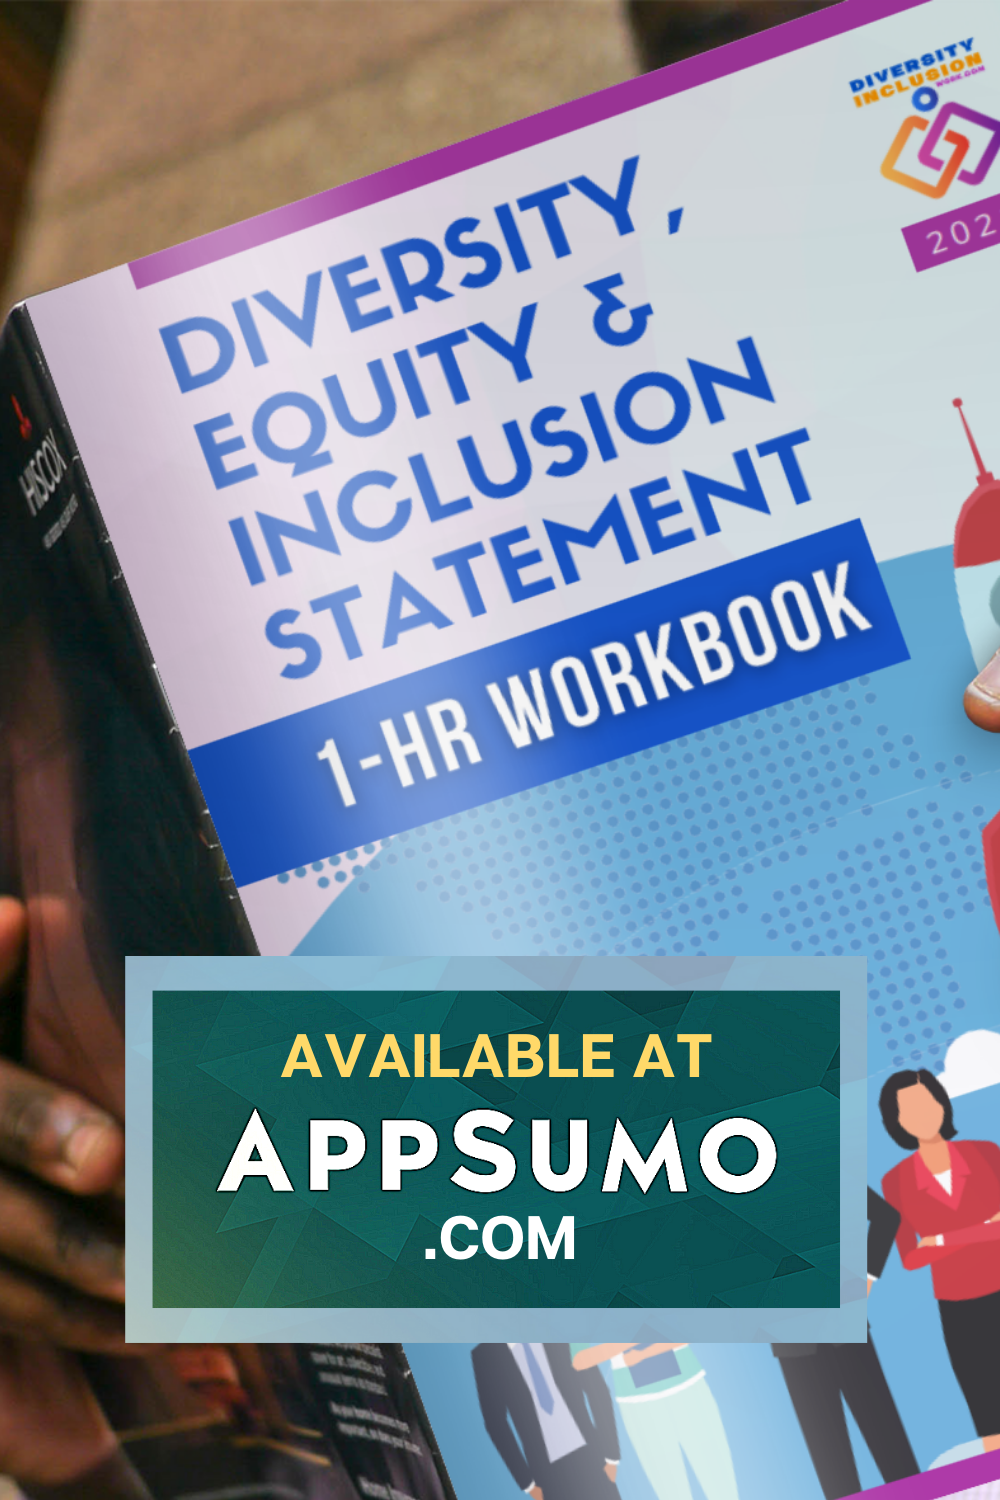 DEI Statement Workbook Diversity Inclusion Work AppSumo2